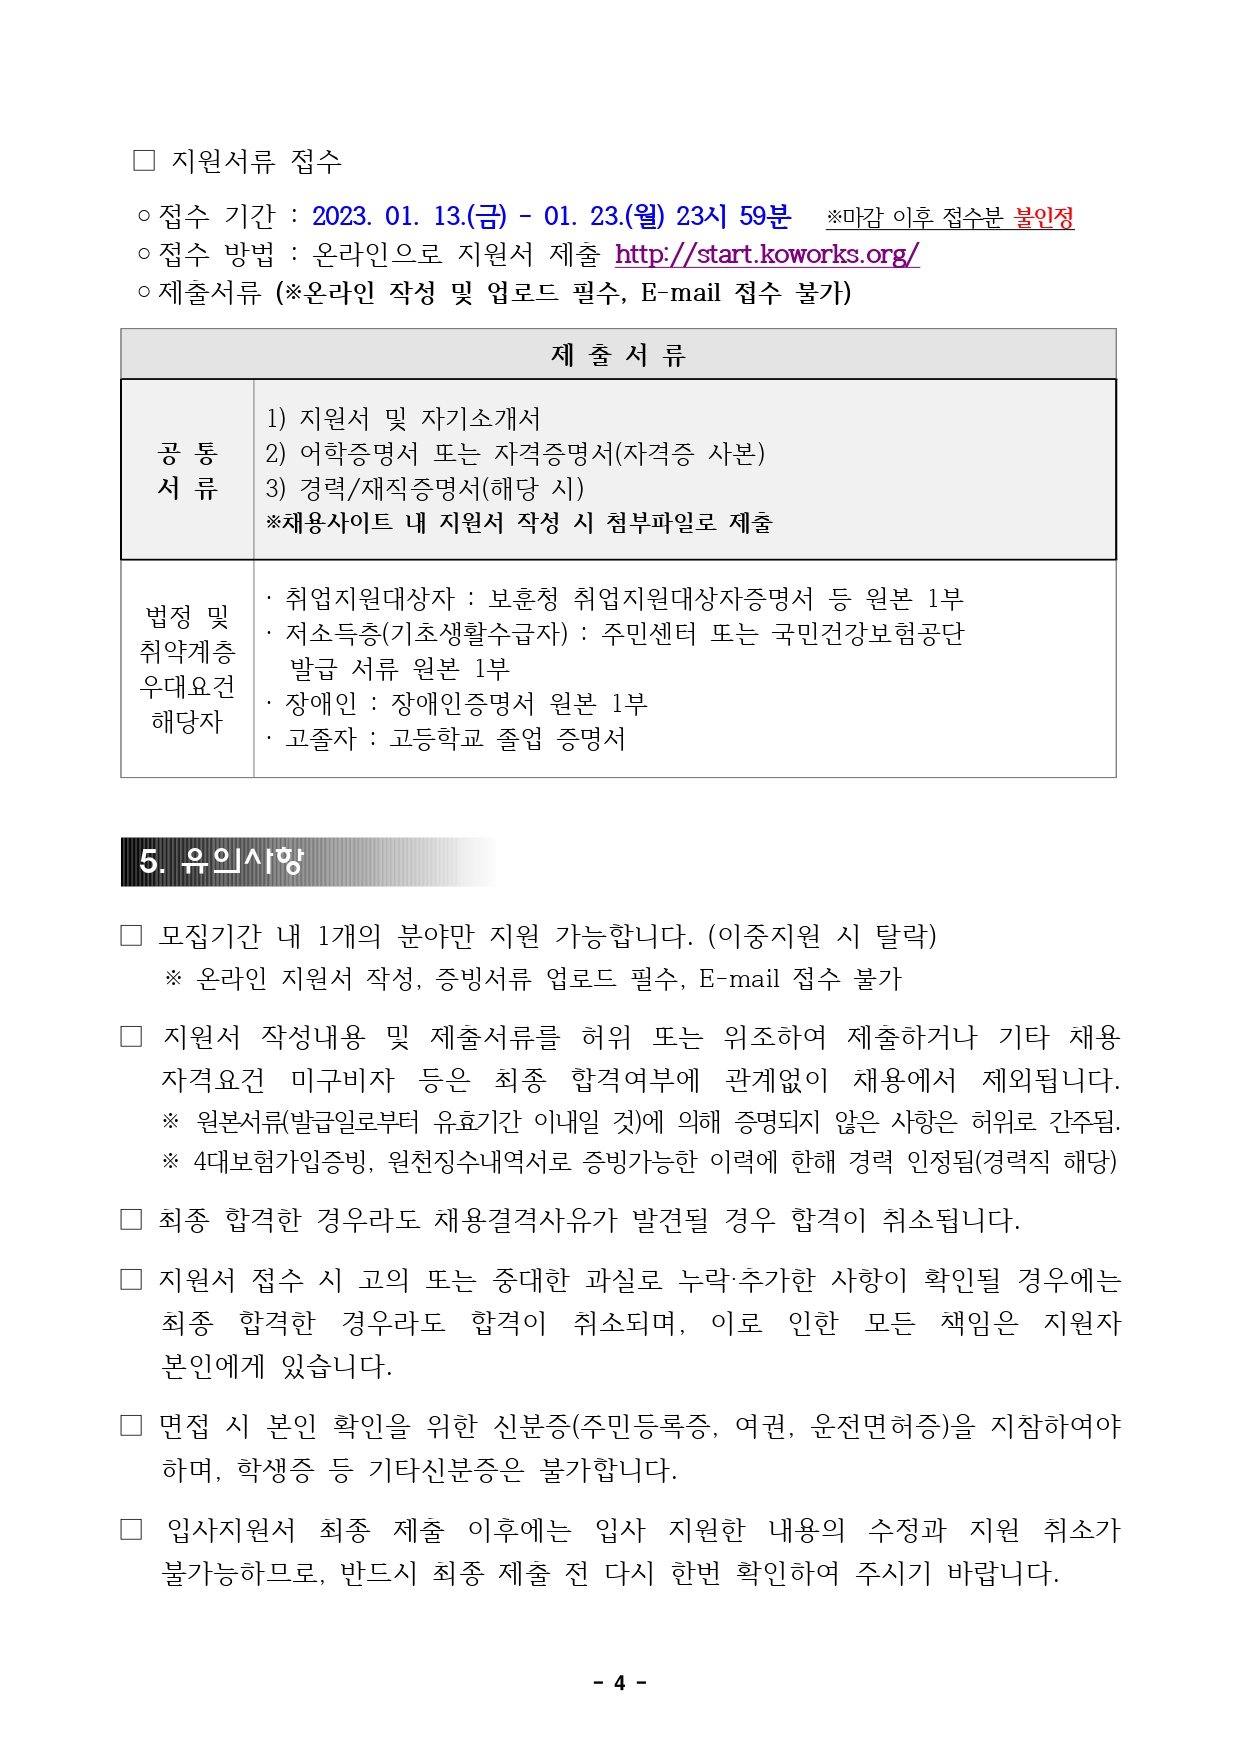 붙임4. 직원채용 공고문(서울,컨벤션)_page-0004.jpg